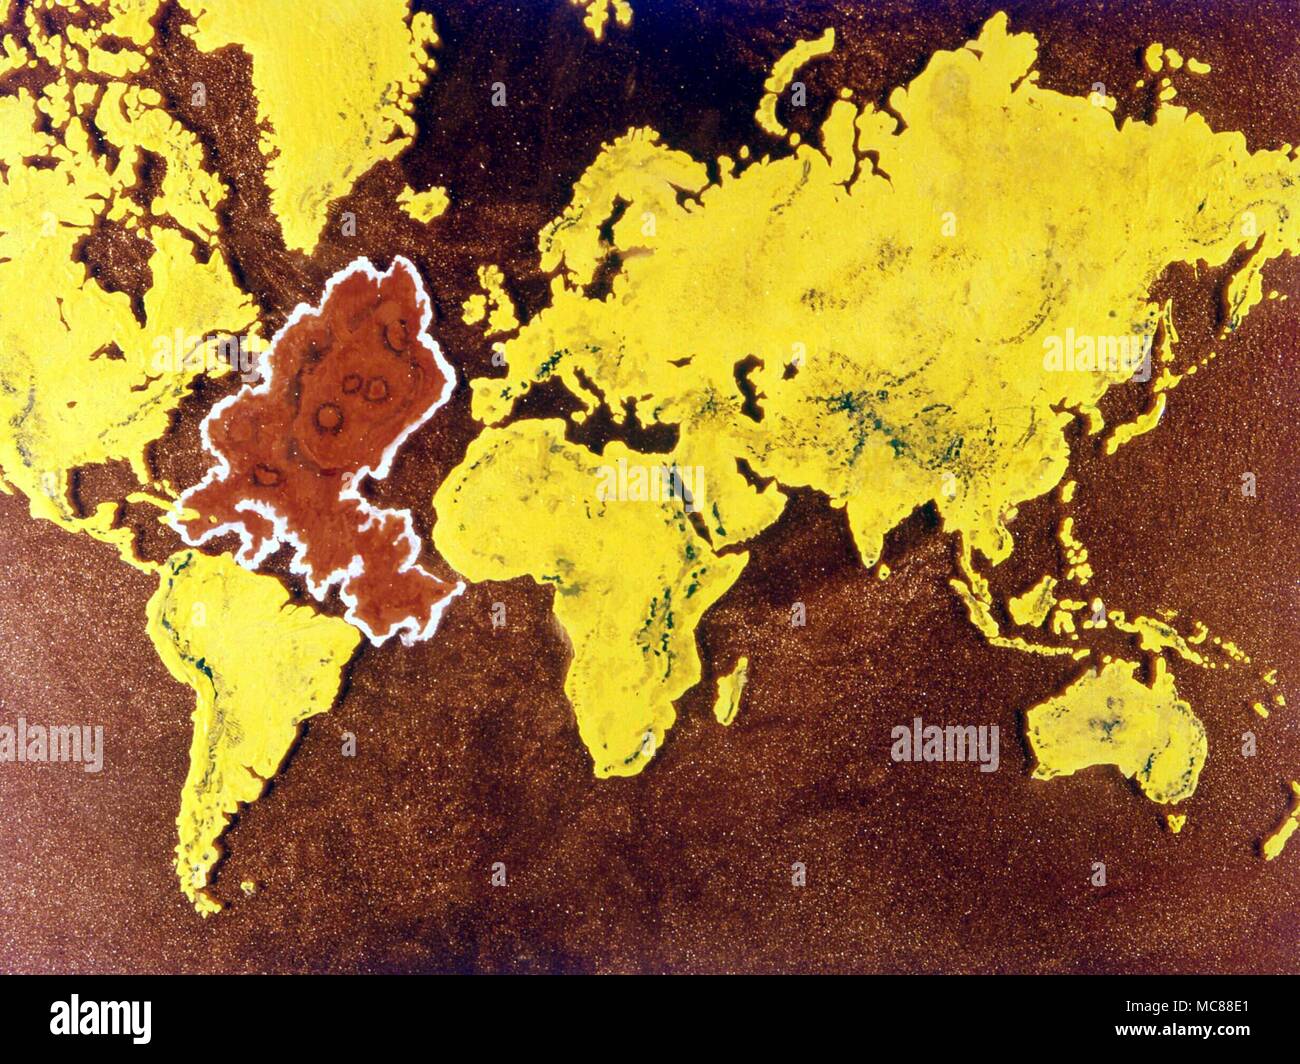 ATLANTIS mappa del mondo durante il periodo di decadenza. La forma e la posizione del continente perduto è basato sulle mappe pubblicato dalla Società Teosofica all inizio del ventesimo secolo. Foto Stock